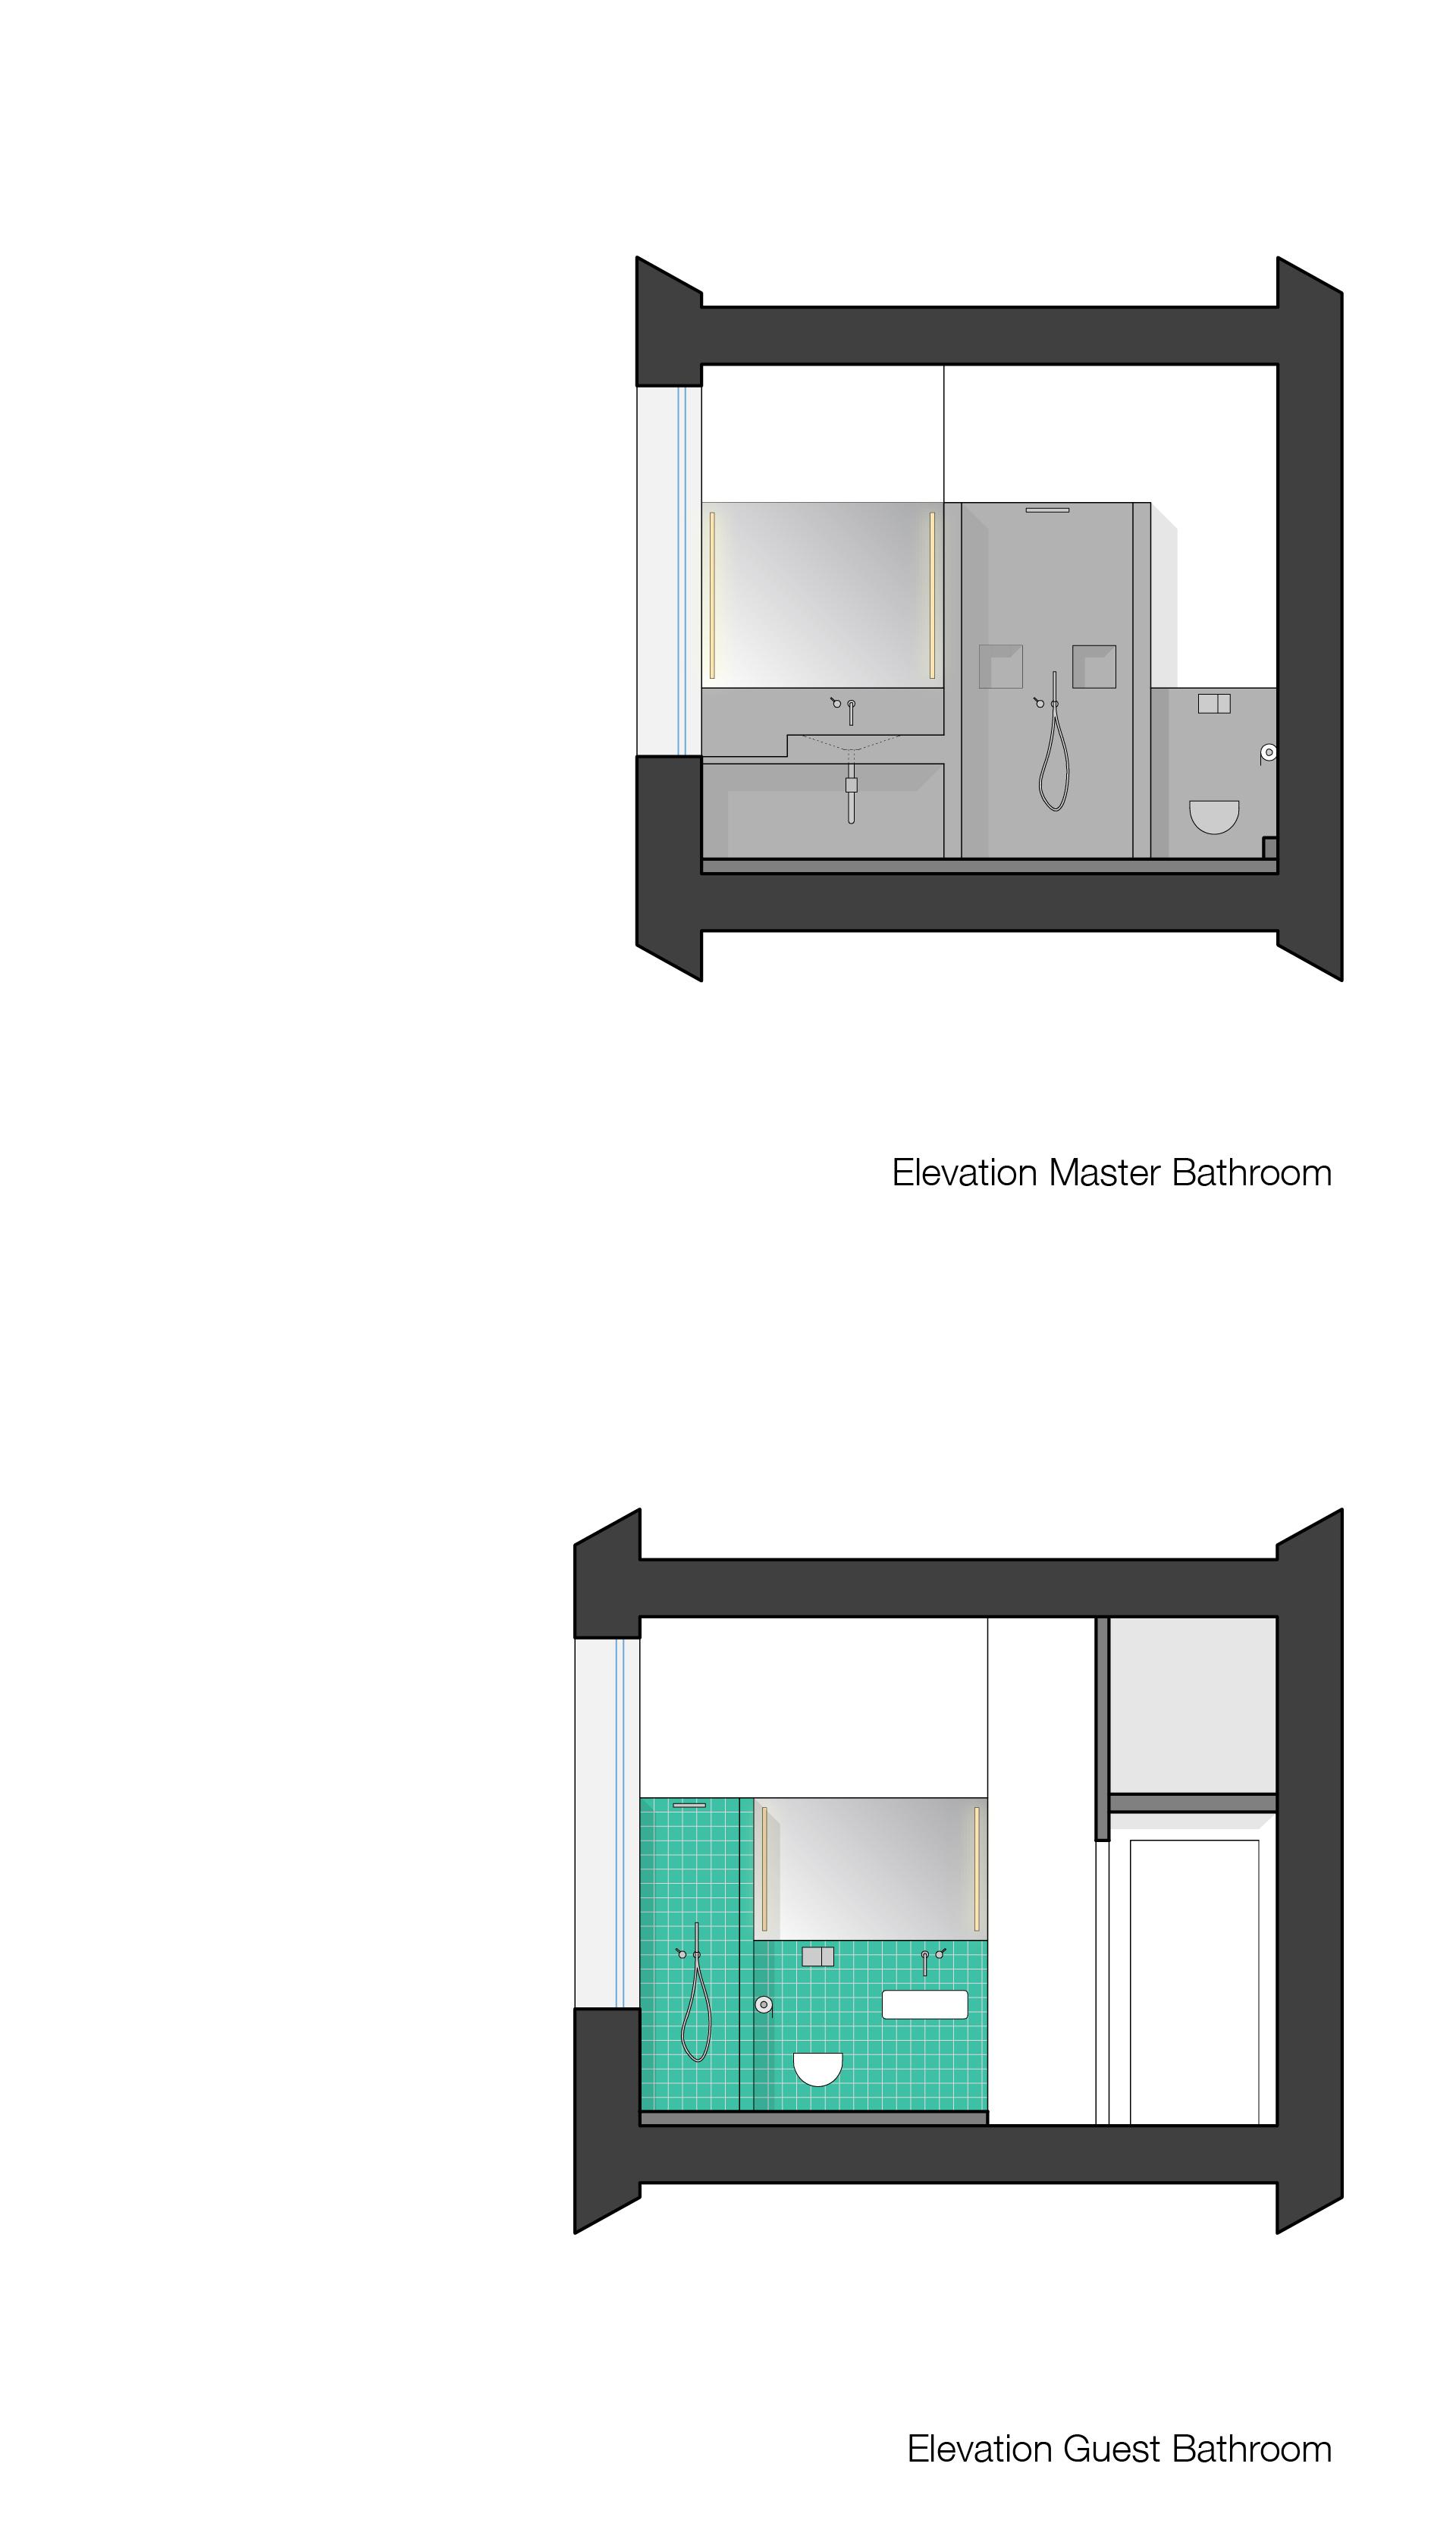 Elevation Bathroom / Guestbathroom #betonciredusche ©MEYLENSTEIN